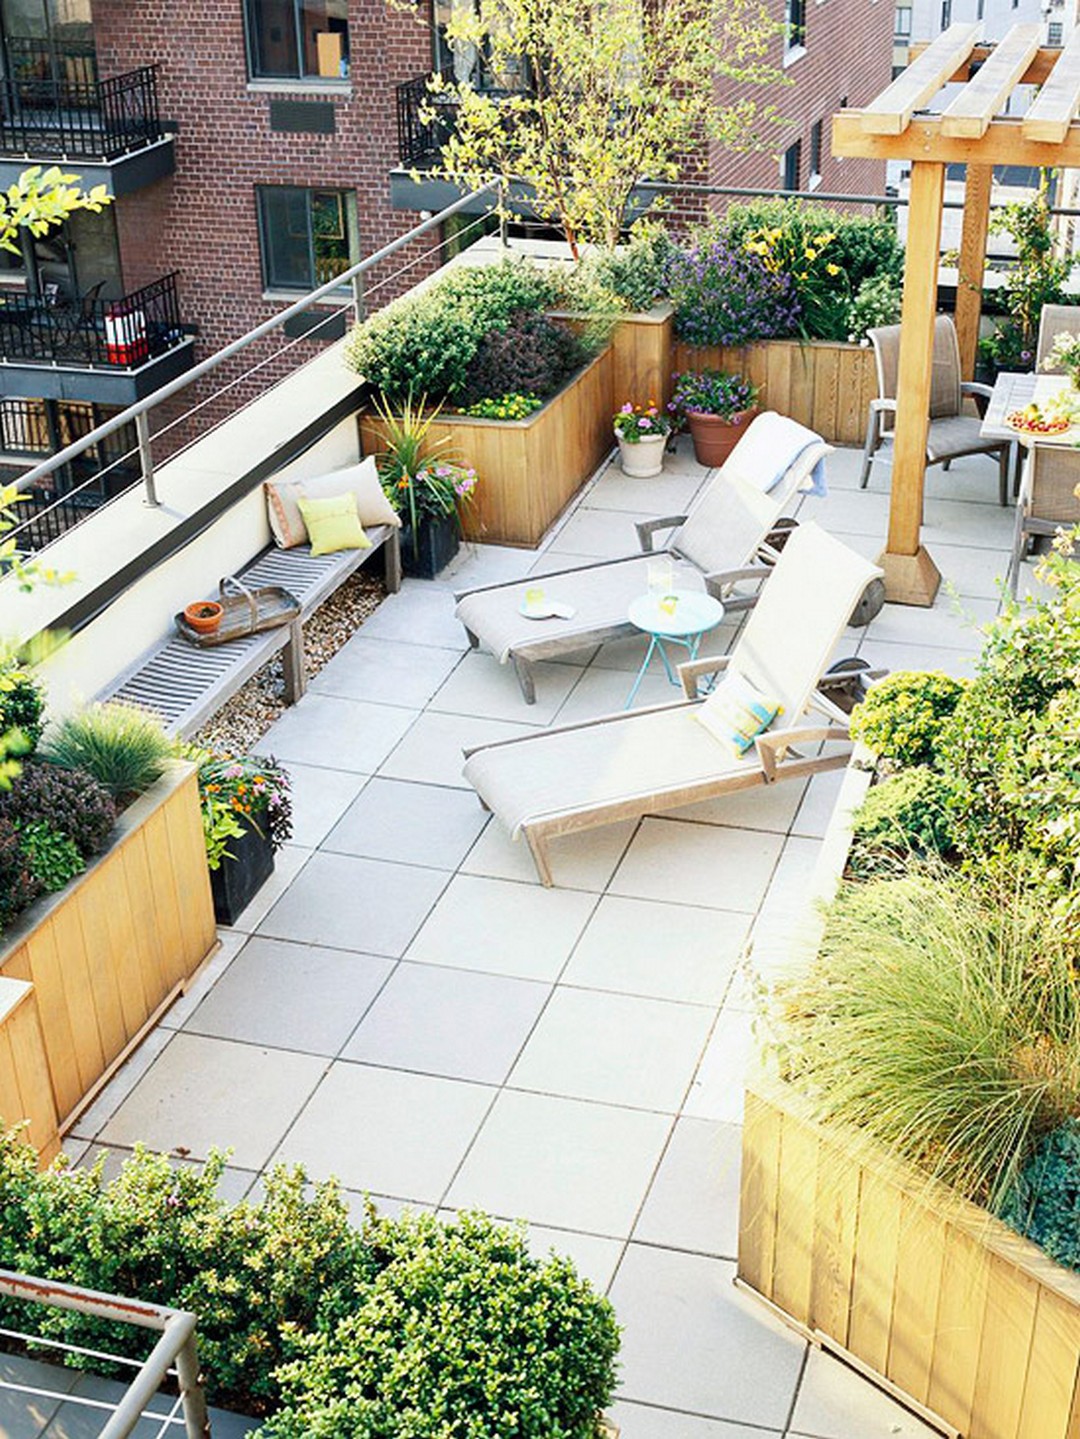 balcony-garden-design-ideas-62-15339577153881424362619.jpg